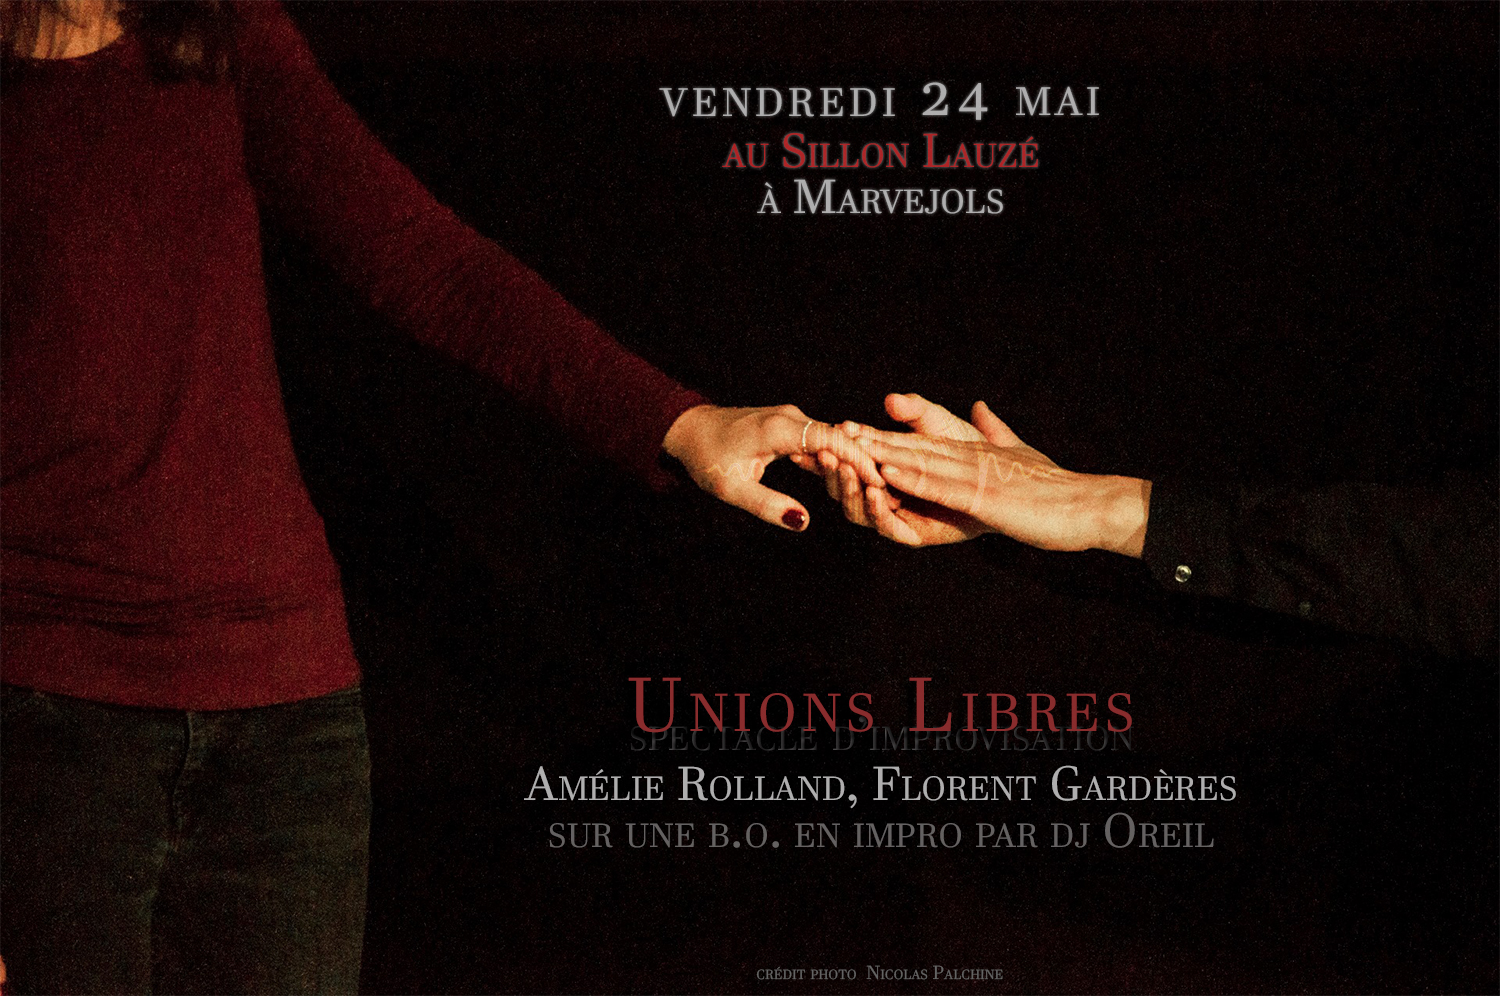 Unions Libres au SIllon Lauzé vendredi 24 mai 2019 - crédit photo Nicolas Palchine